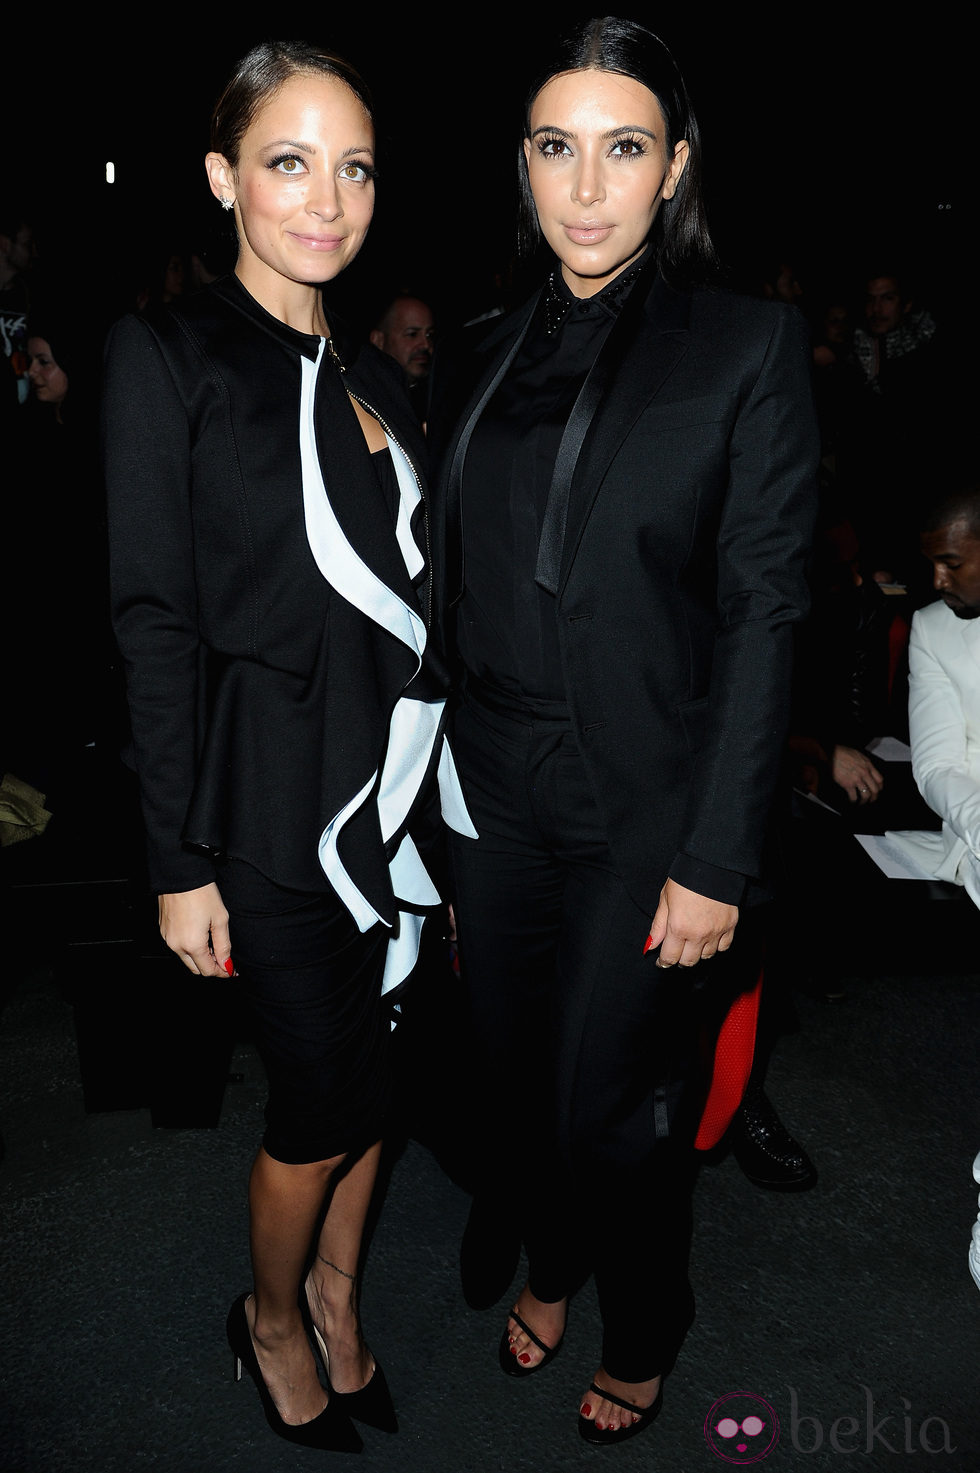 Kim Kardashian y Nicole Richie en el desfile de Givenchy otoño/invierno 2013/2014 en la Semana de la Moda de París